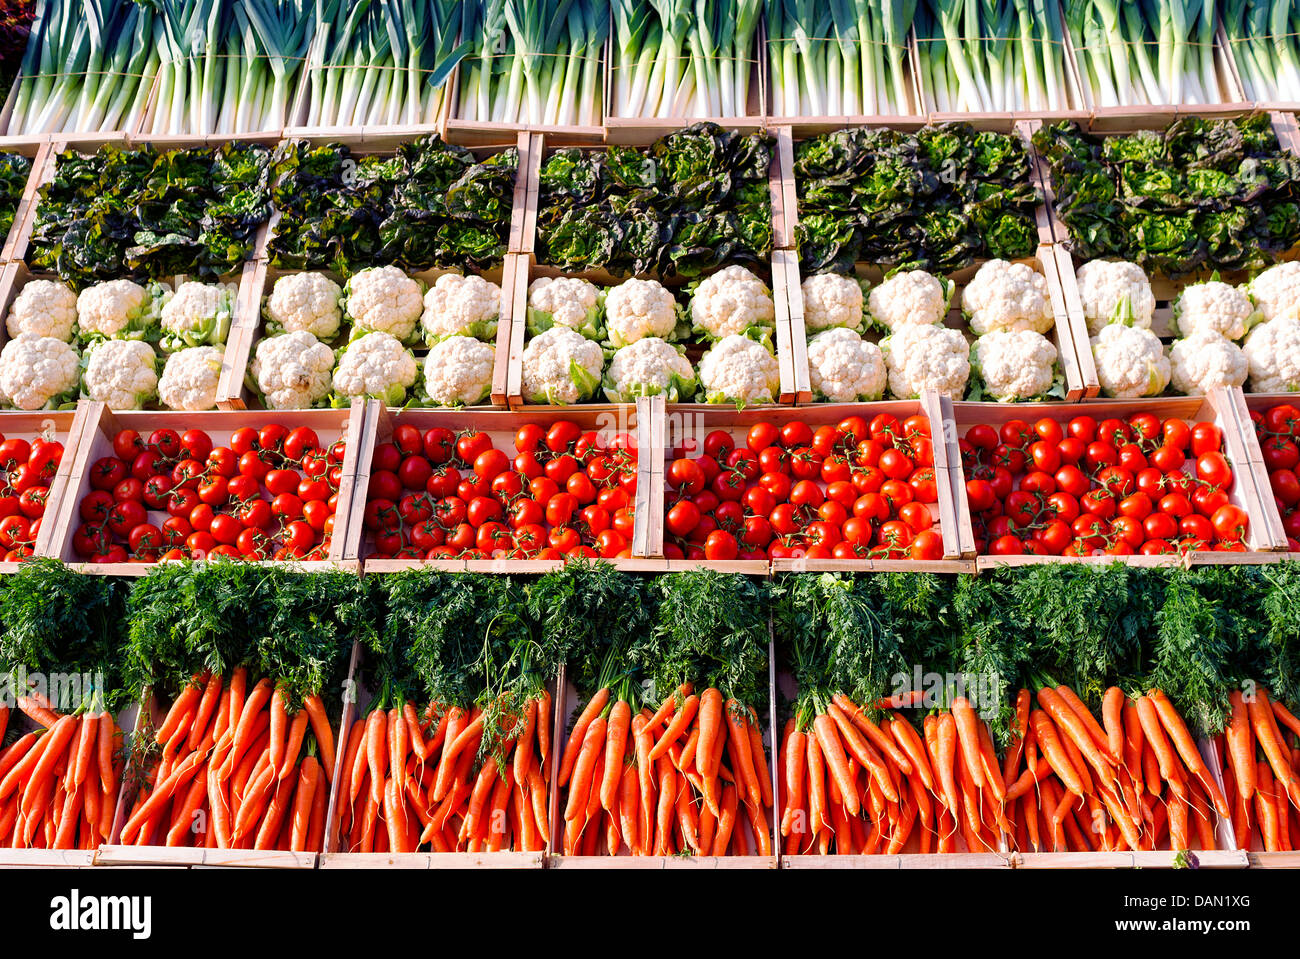 Beaucoup de légumes sur shelfes in supermarket Banque D'Images